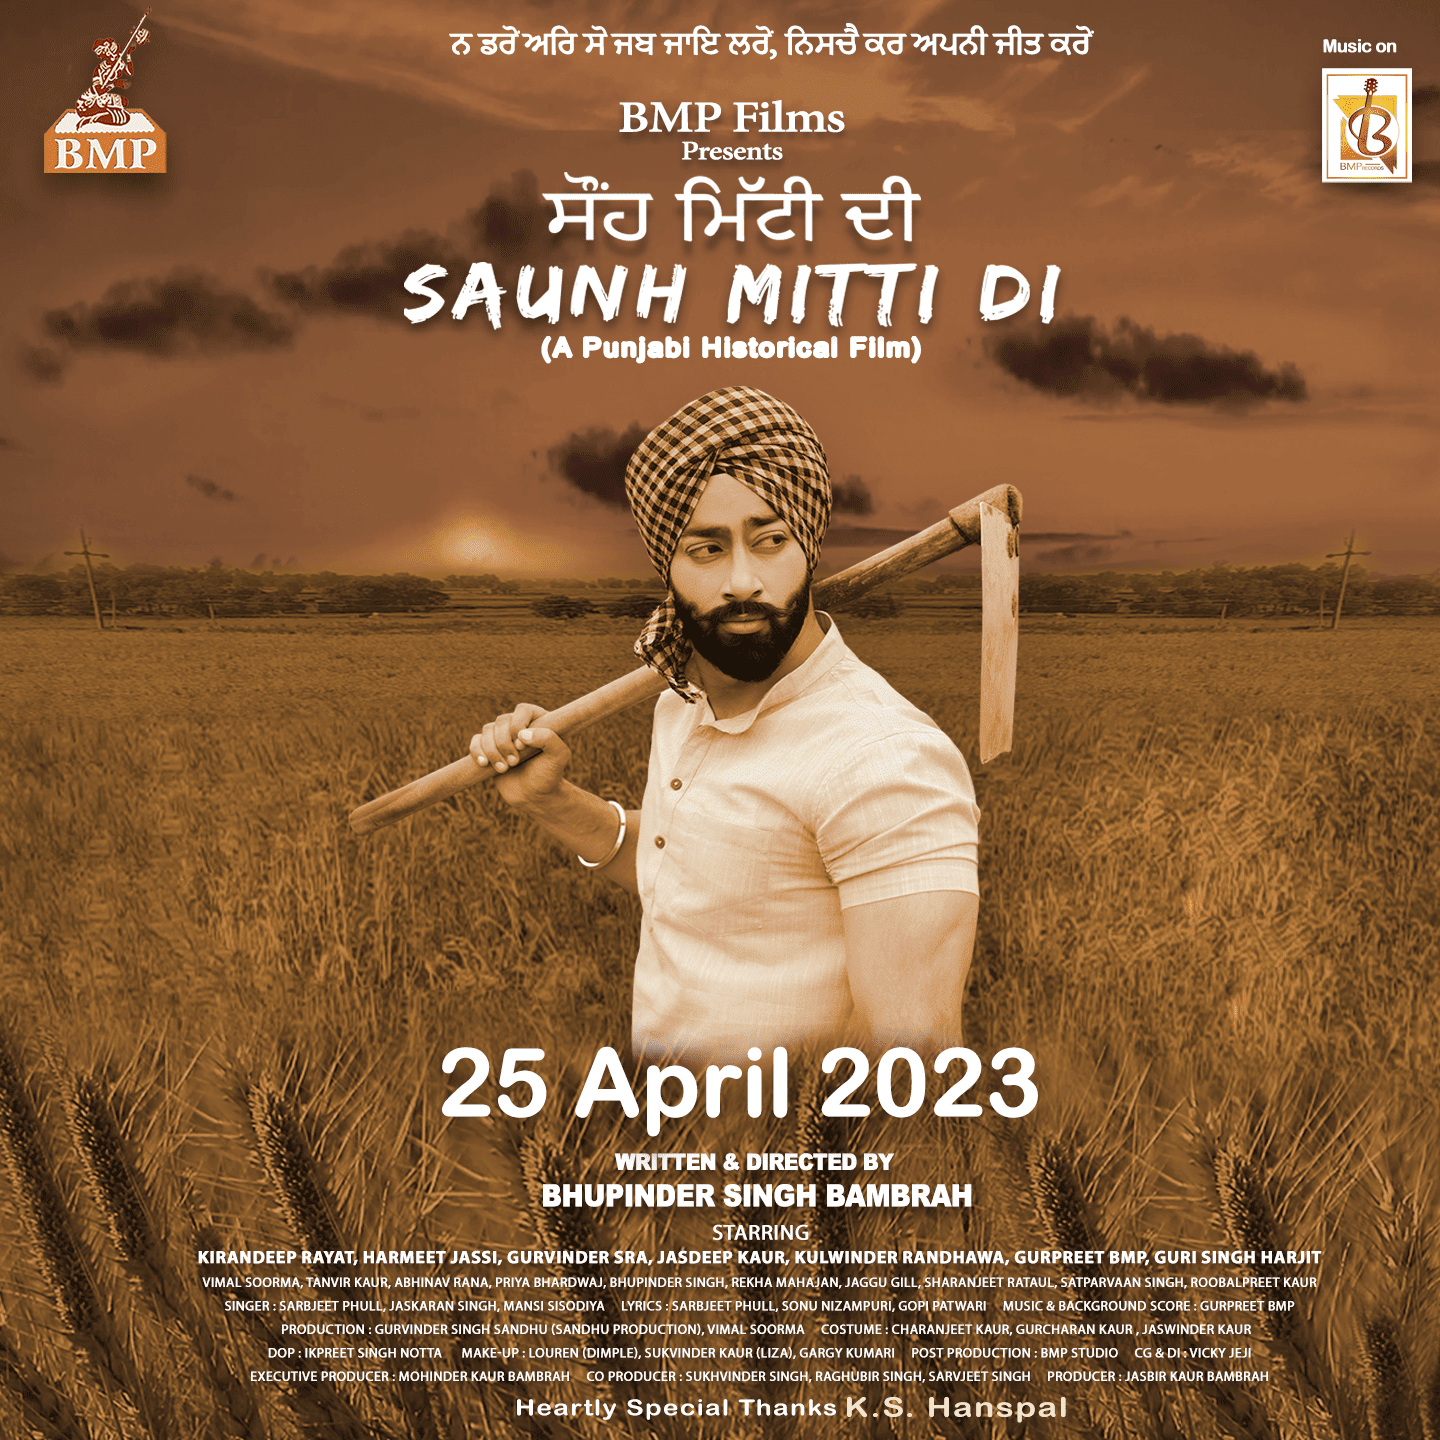 Saunh Mitti Di based on Farm bill 2020